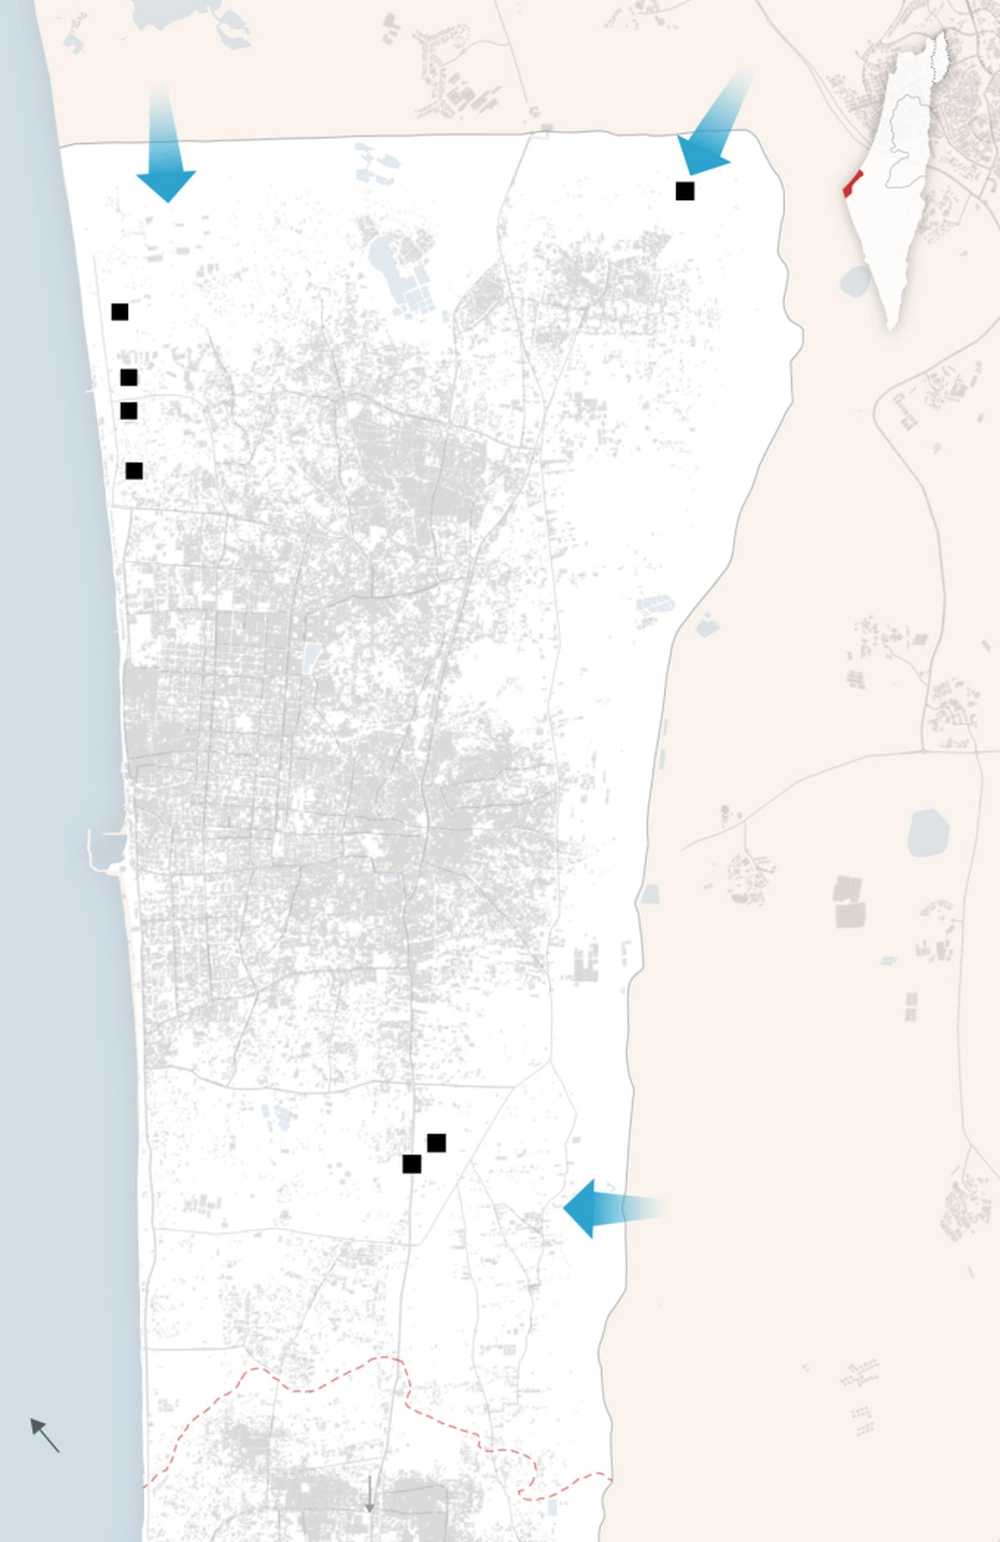 Tình hình chiến sự Dải Gaza mới nhất: xe bọc thép Israel tiến vào từ 3 hướng, Hamas khai hỏa dữ dội chống trả 